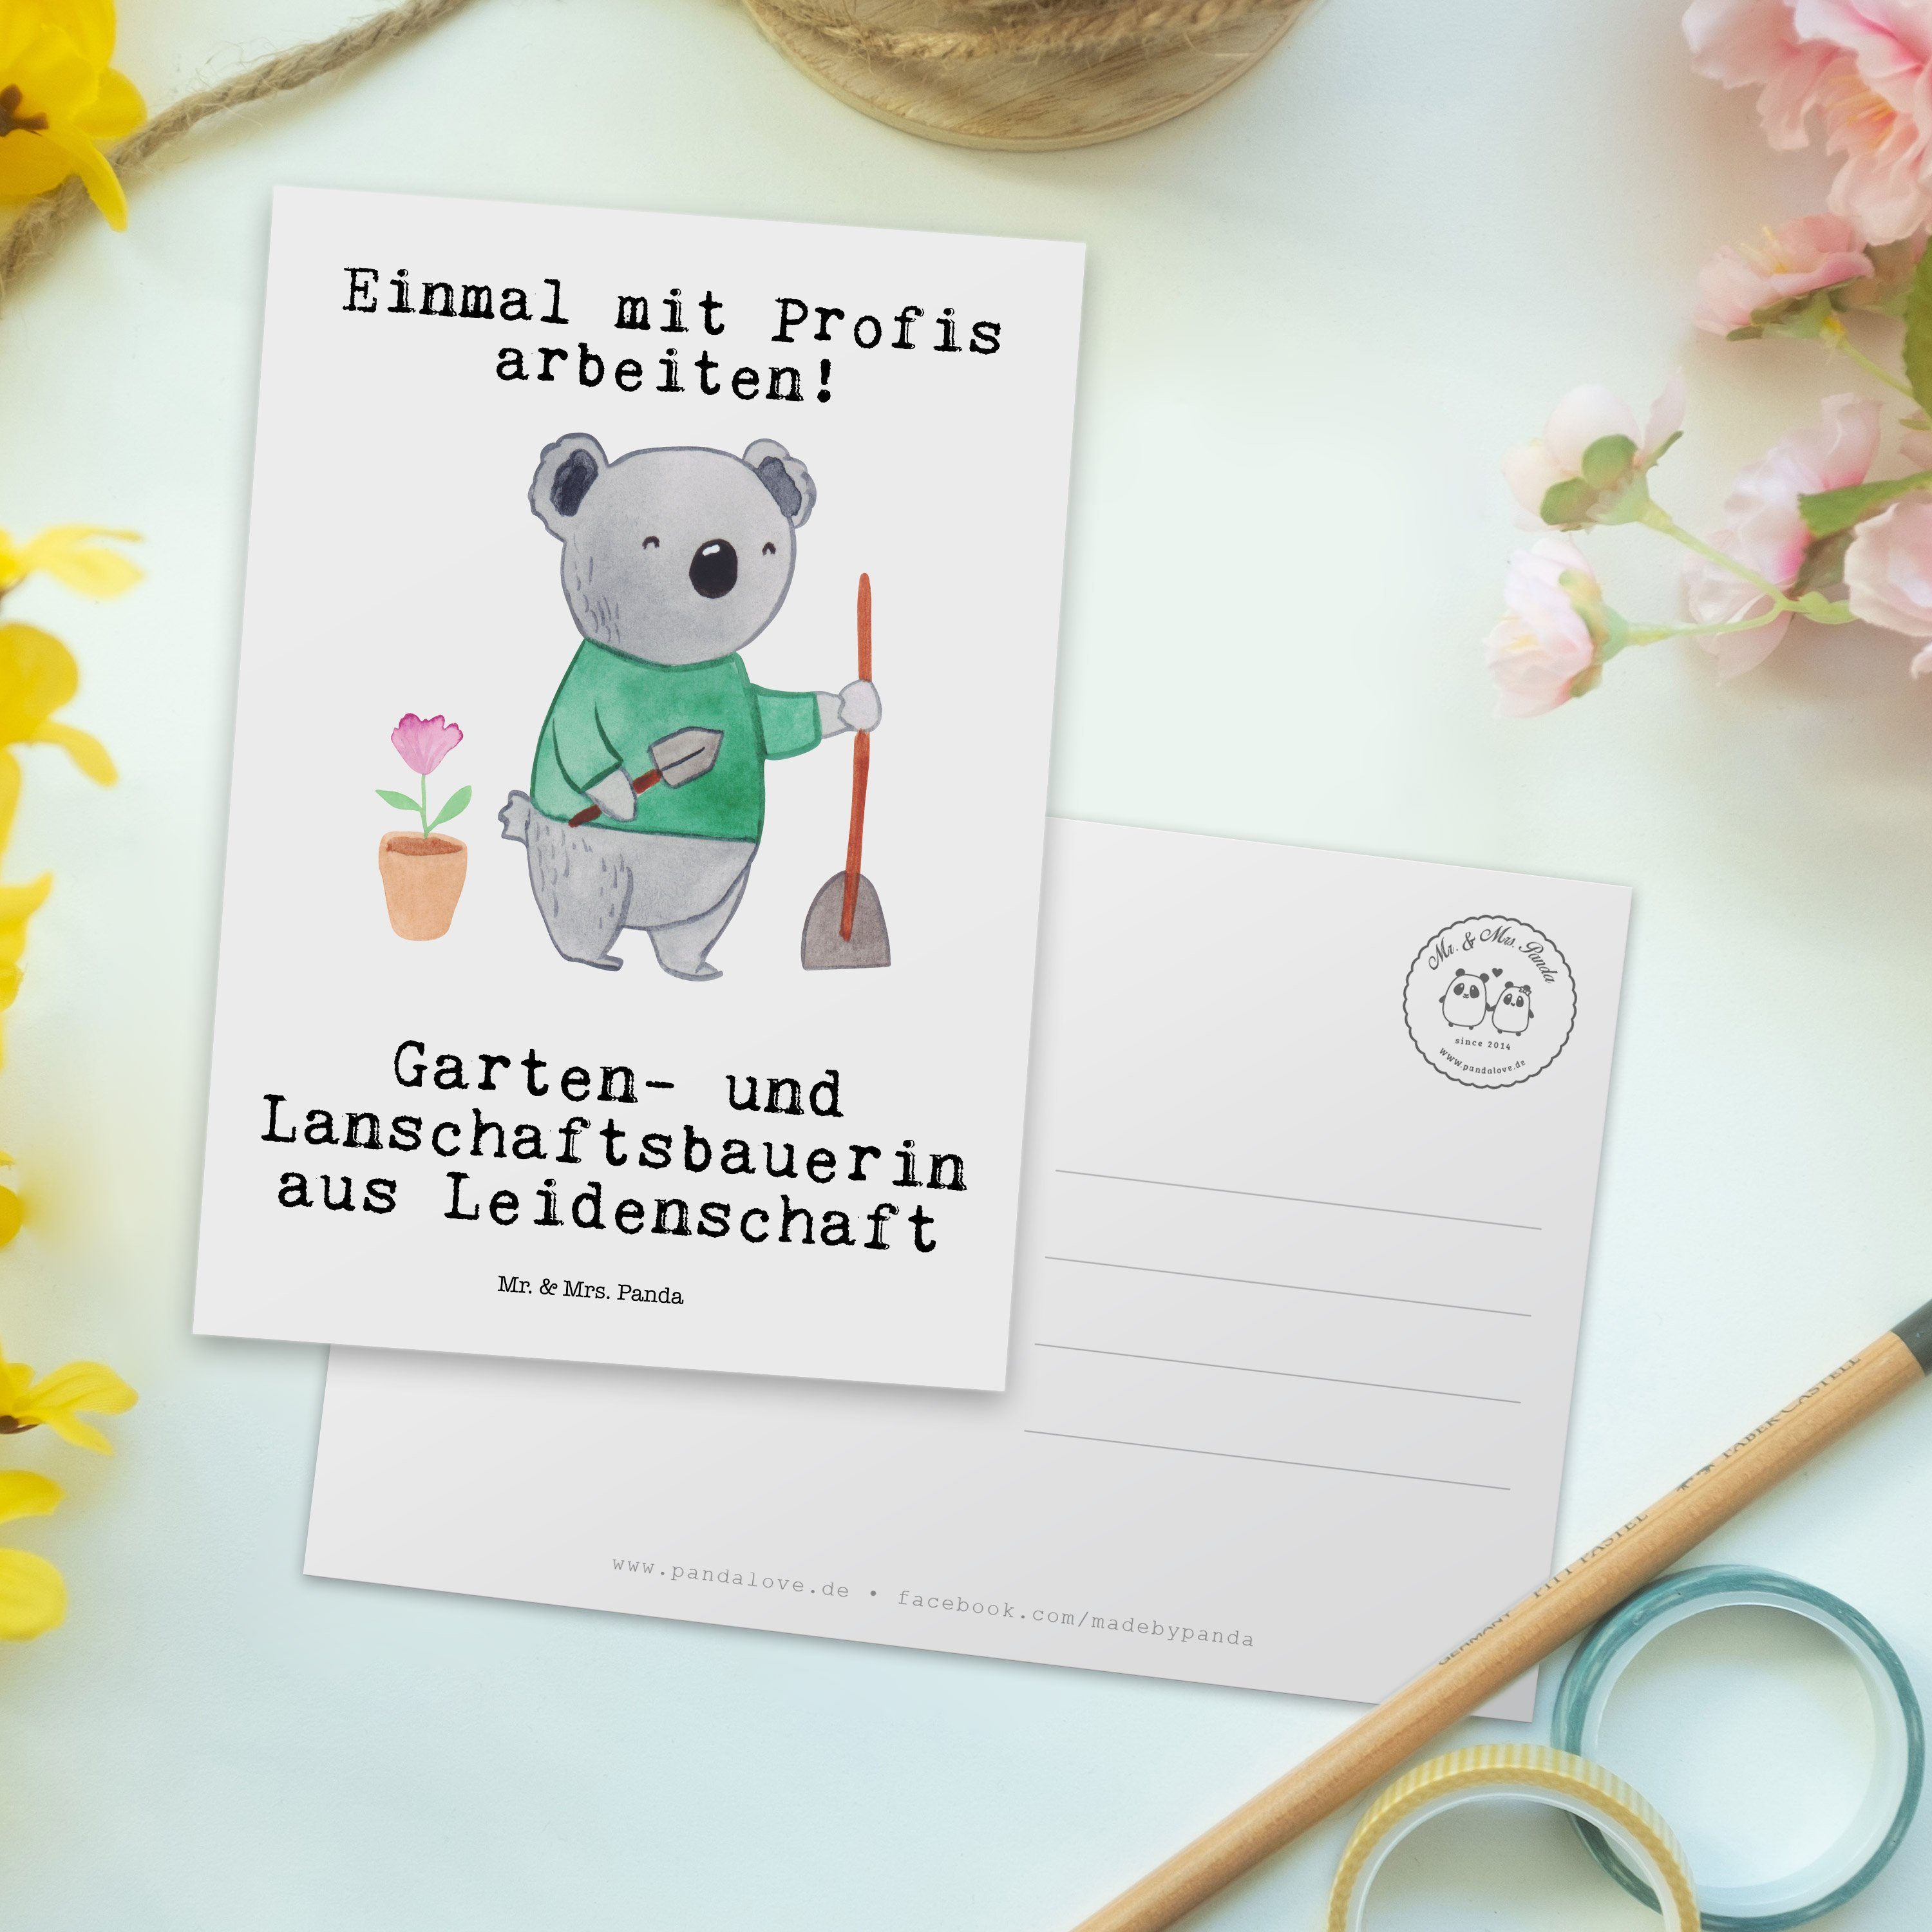 Mr. & Mrs. Panda aus Landschaftsbauerin Gä Postkarte und - Garten- - Leidenschaft Weiß Geschenk